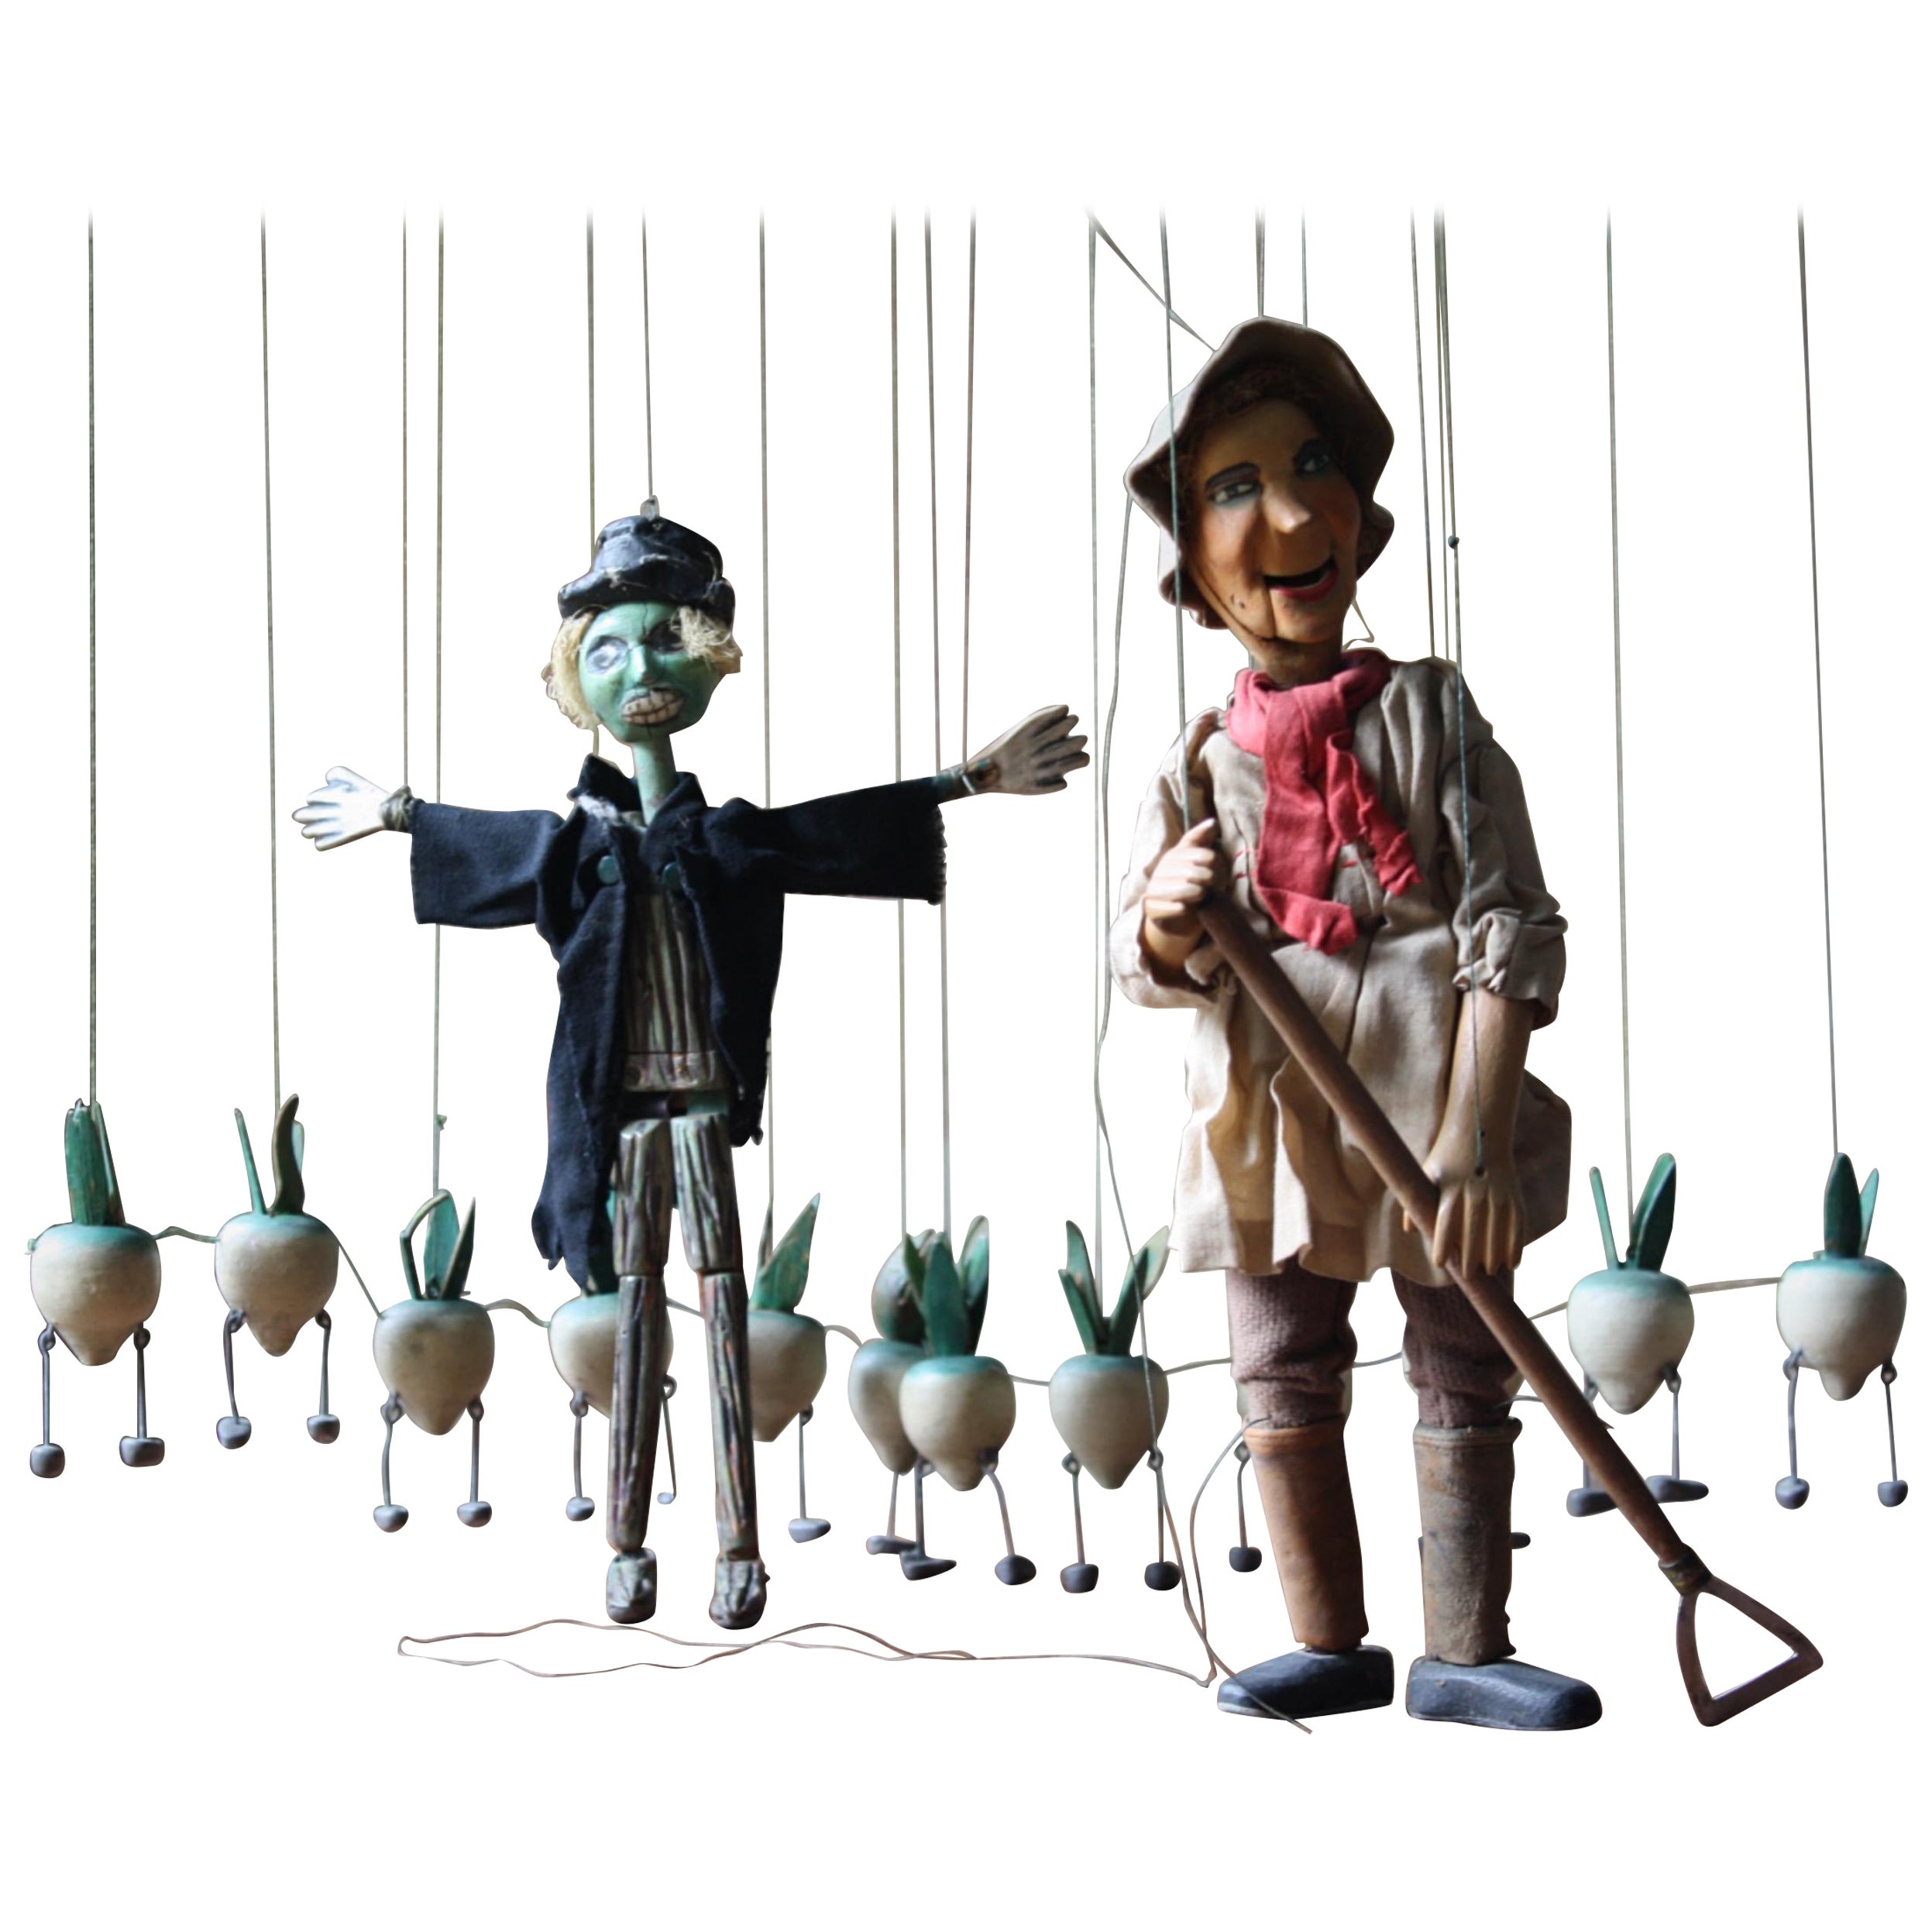 Les marionnettes en jacquard « The Turnip's, Scarecrow & Gardener » de John Carr des années 1940